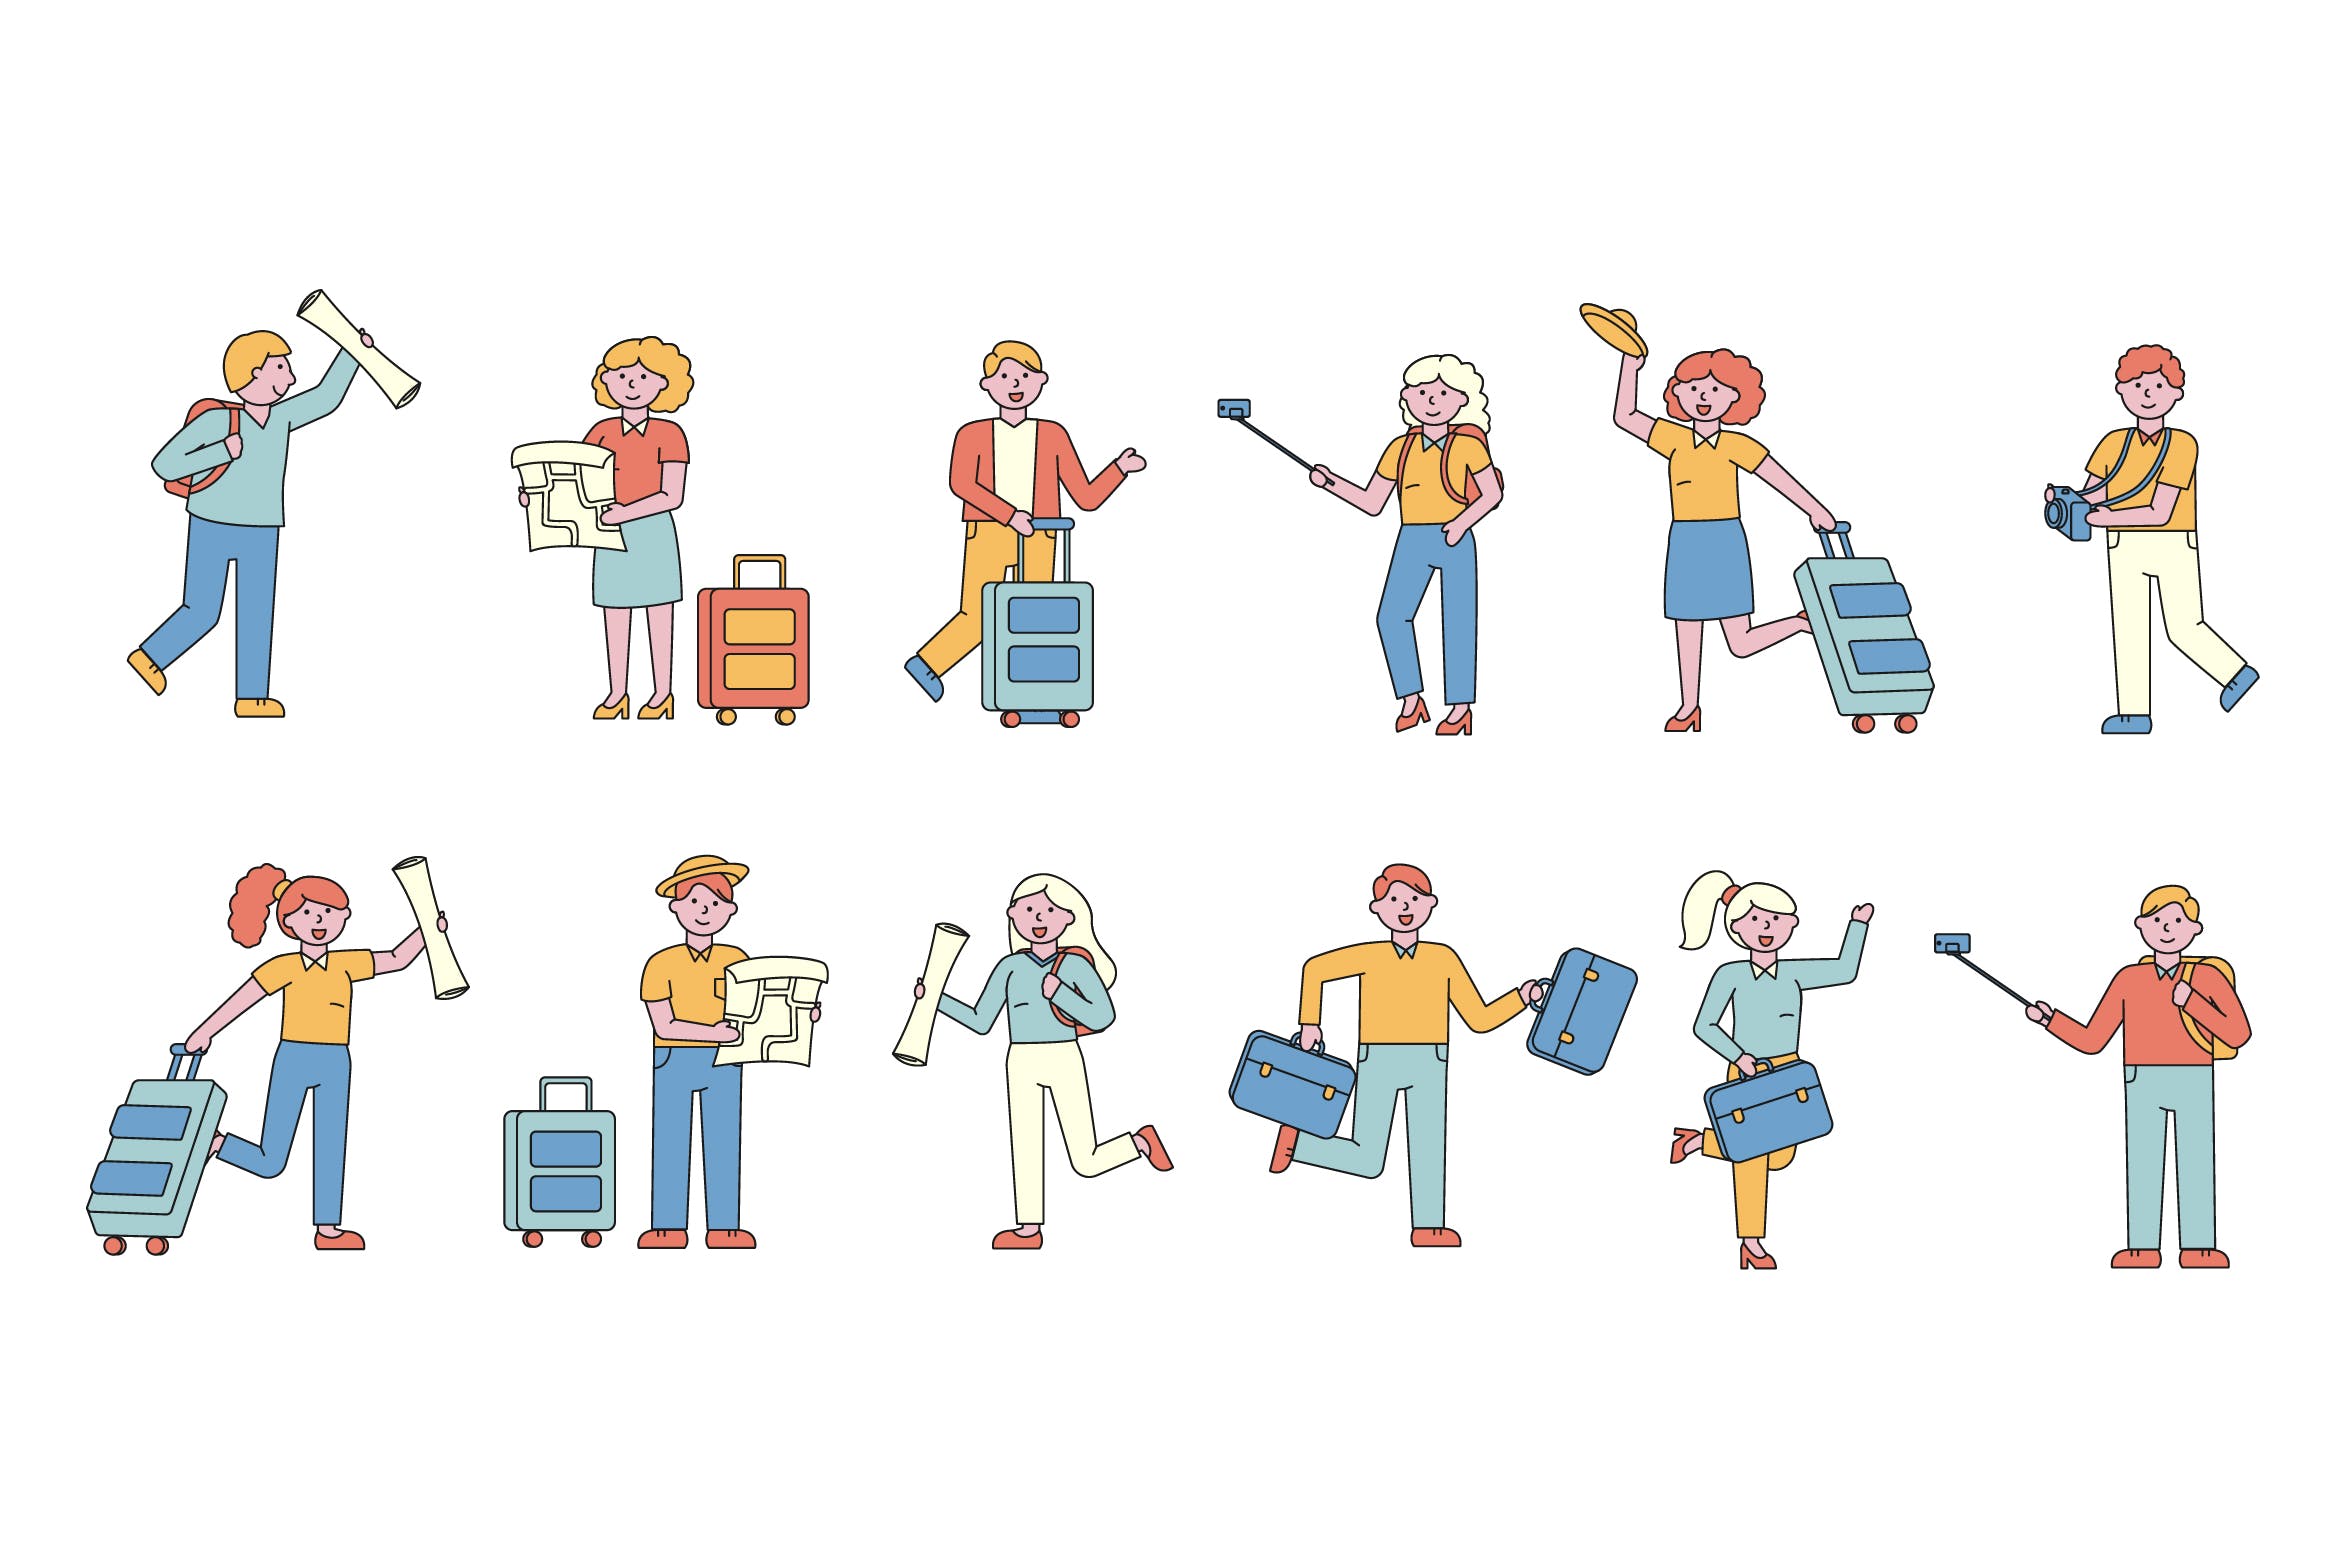 旅行人物形象线条艺术矢量插画第一素材精选素材 Tourists Lineart People Character Collection插图